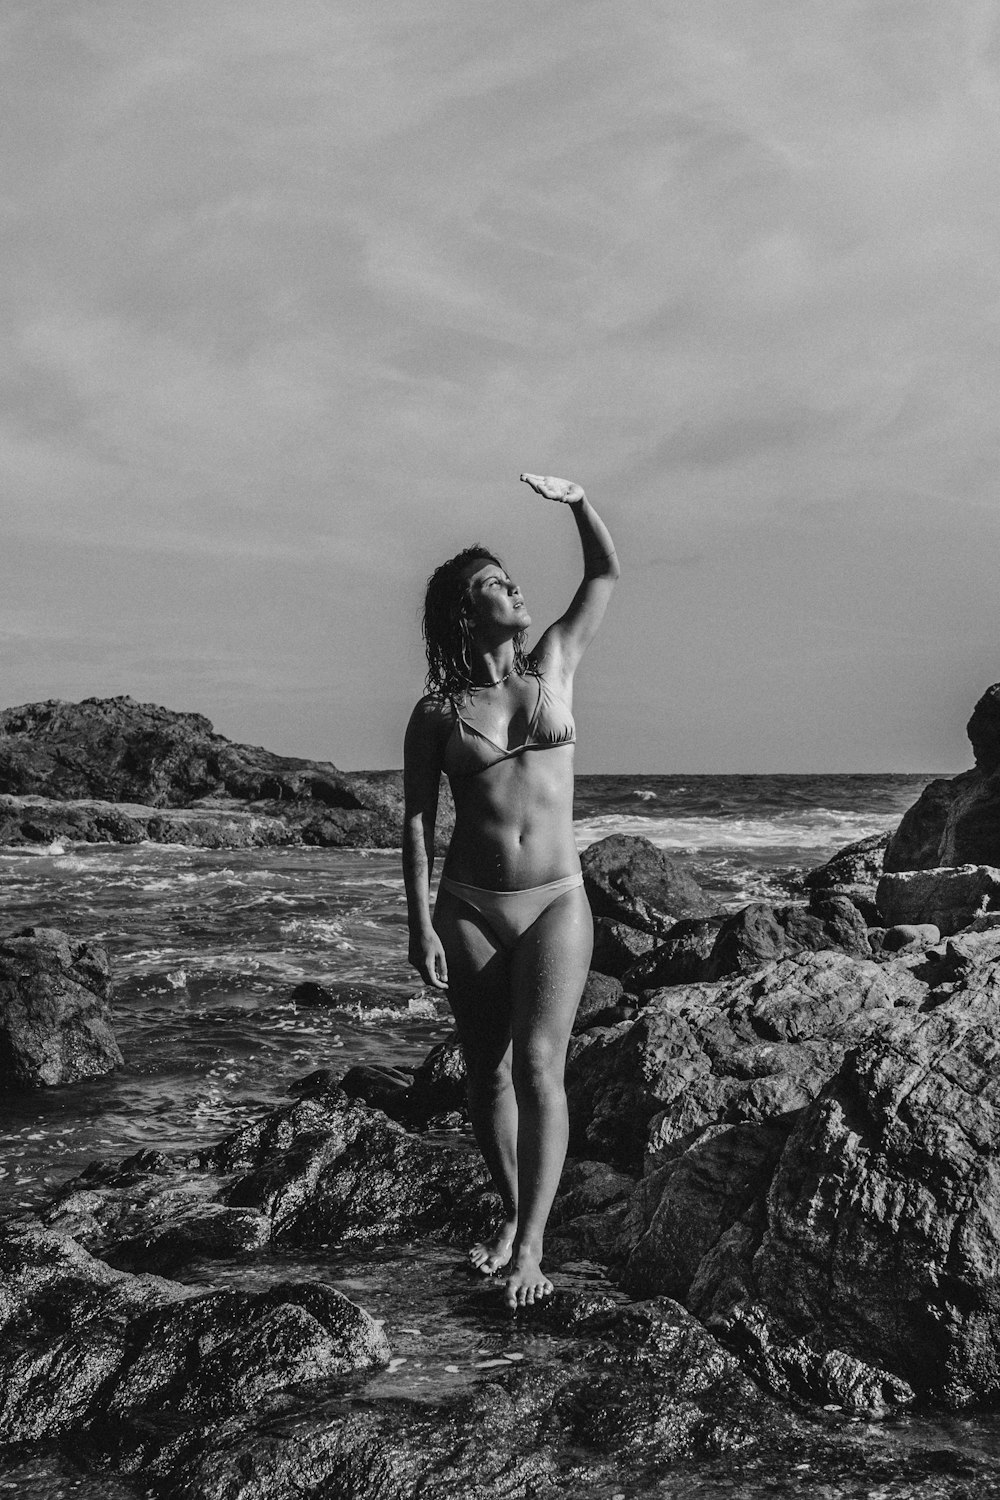 grayscale photo of woman in bikini standing on rock near sea